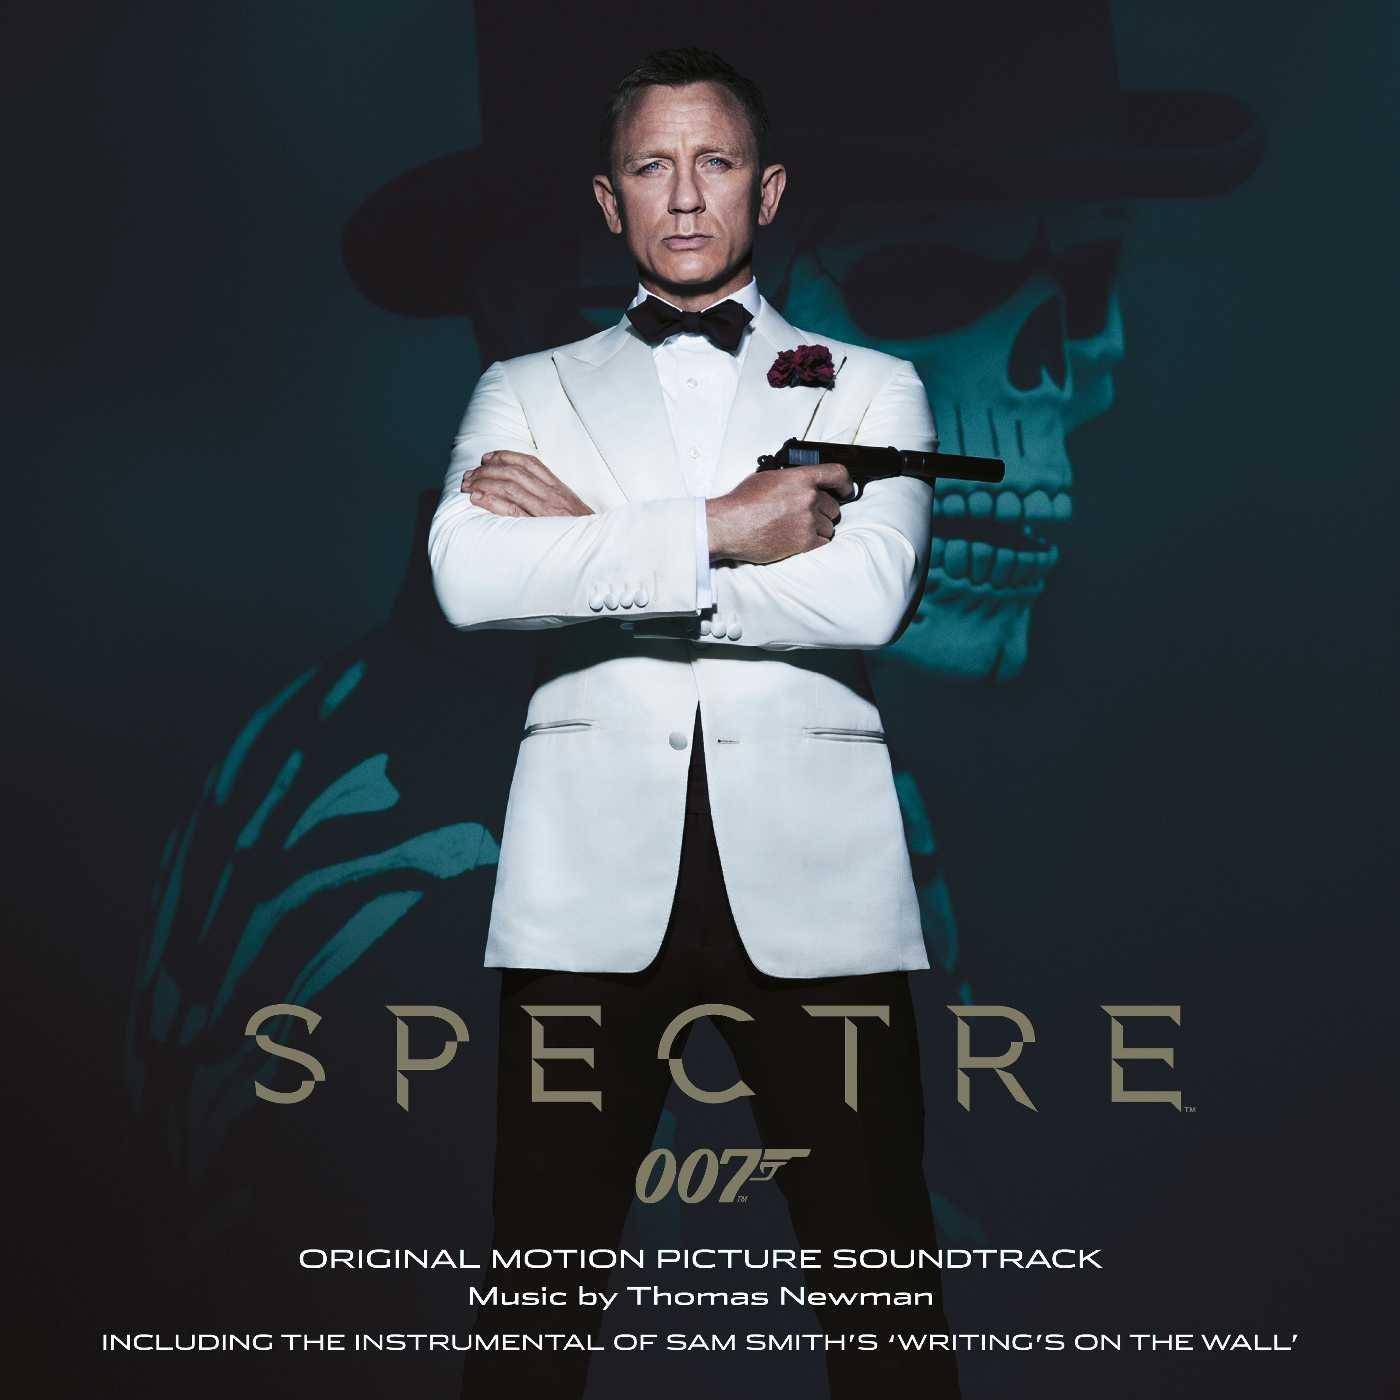 RECENZE: James Bond znovu zasahuje. Soundtrack Spectre se Thomasovi Newmanovi povedl